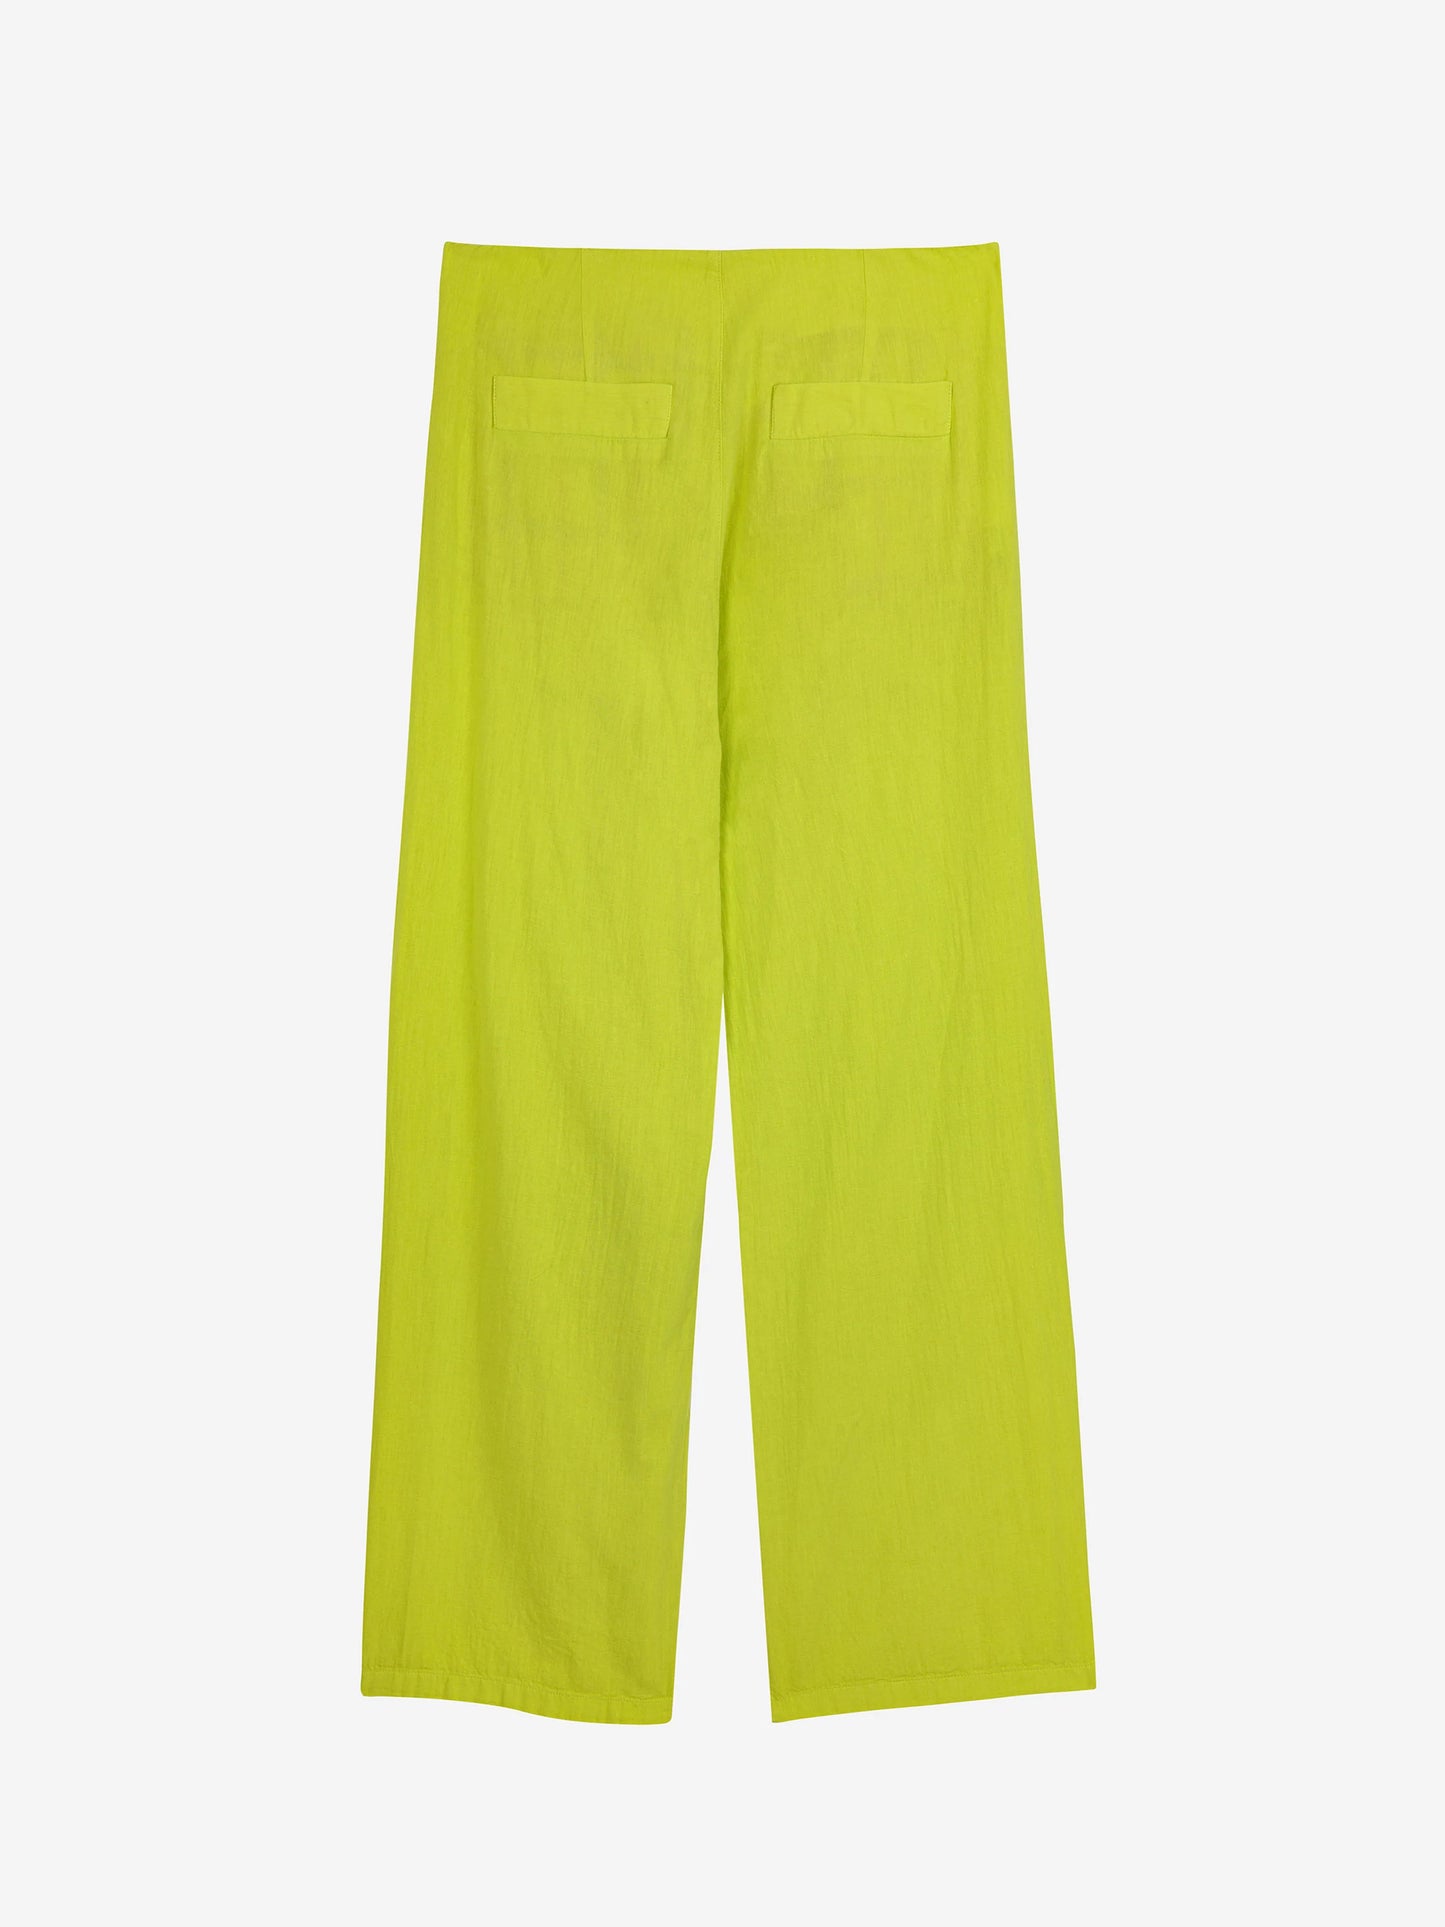 Pantalon vert citron à pinces